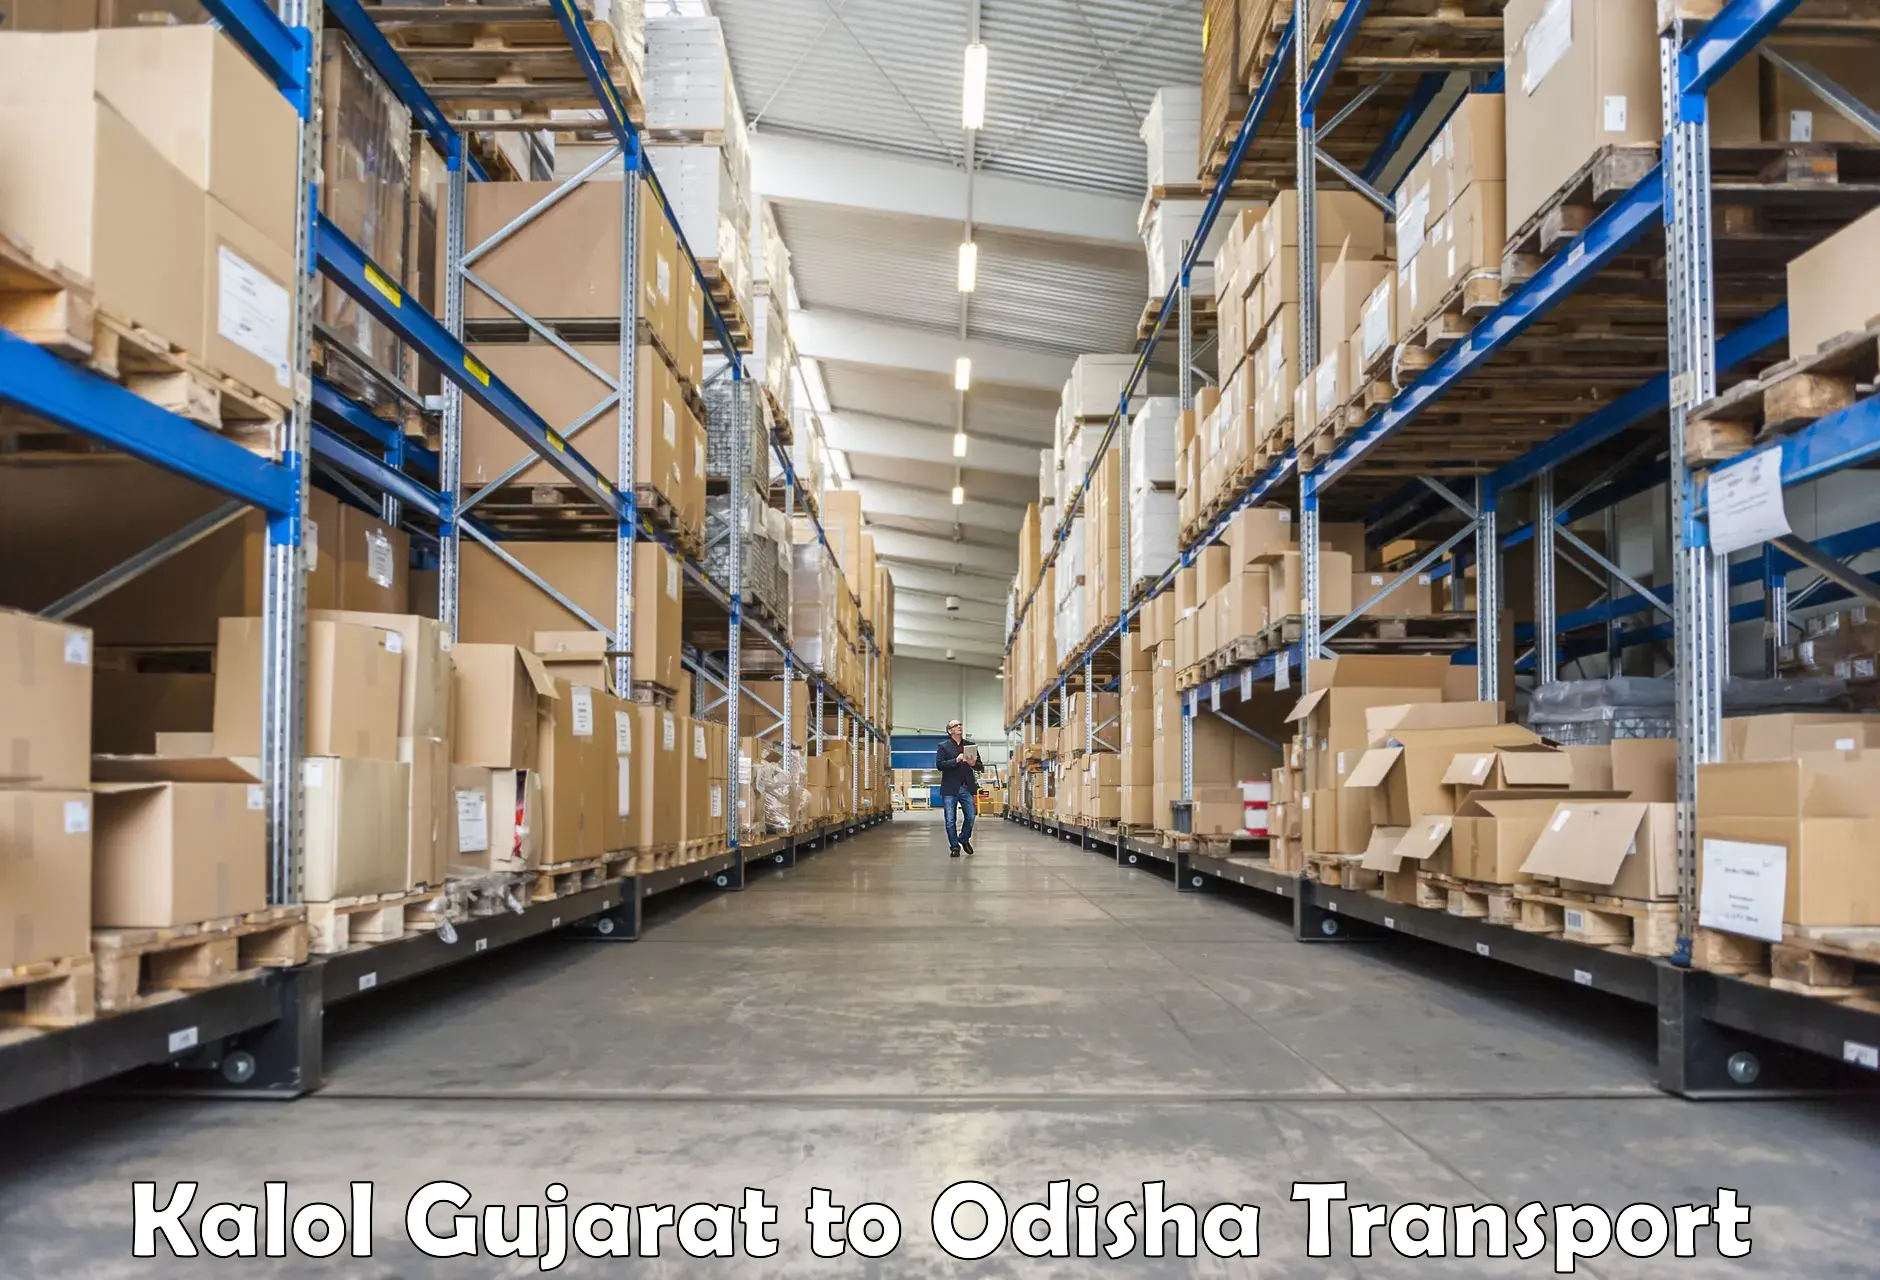 Luggage transport services in Kalol Gujarat to Kishorenagar